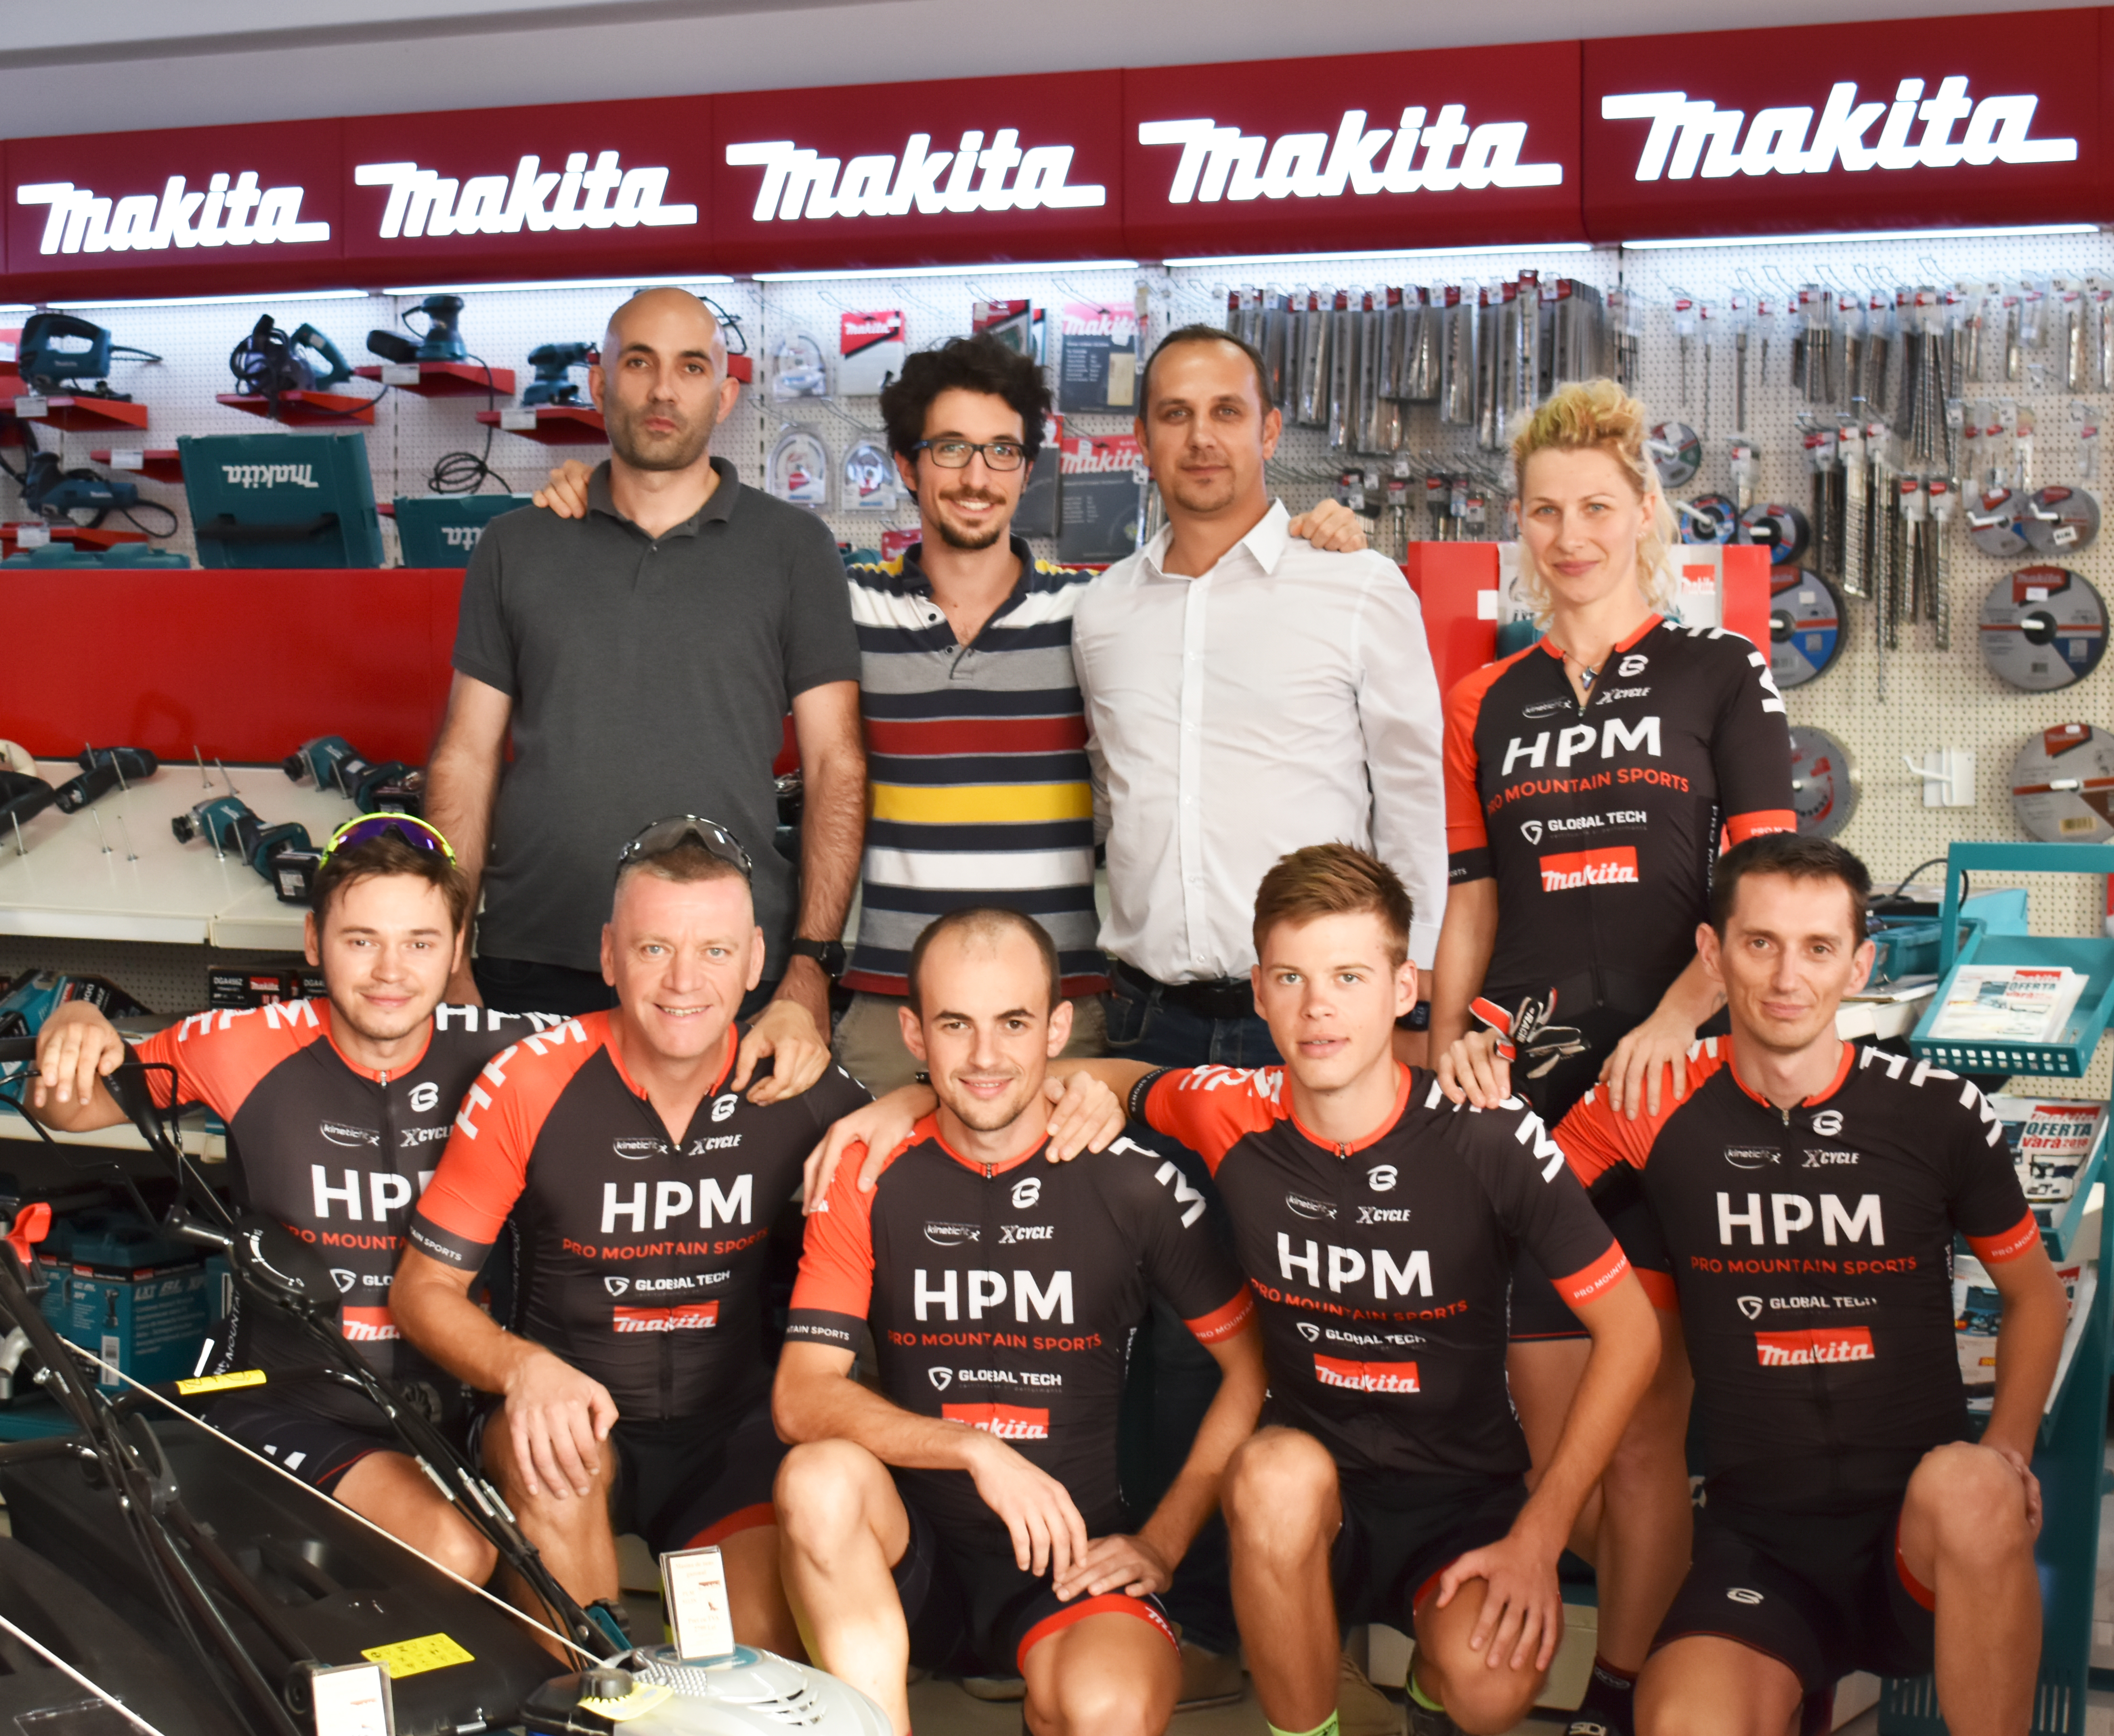 HPM Pro Mountain Sports in vizita la Makita Store by Global Tech